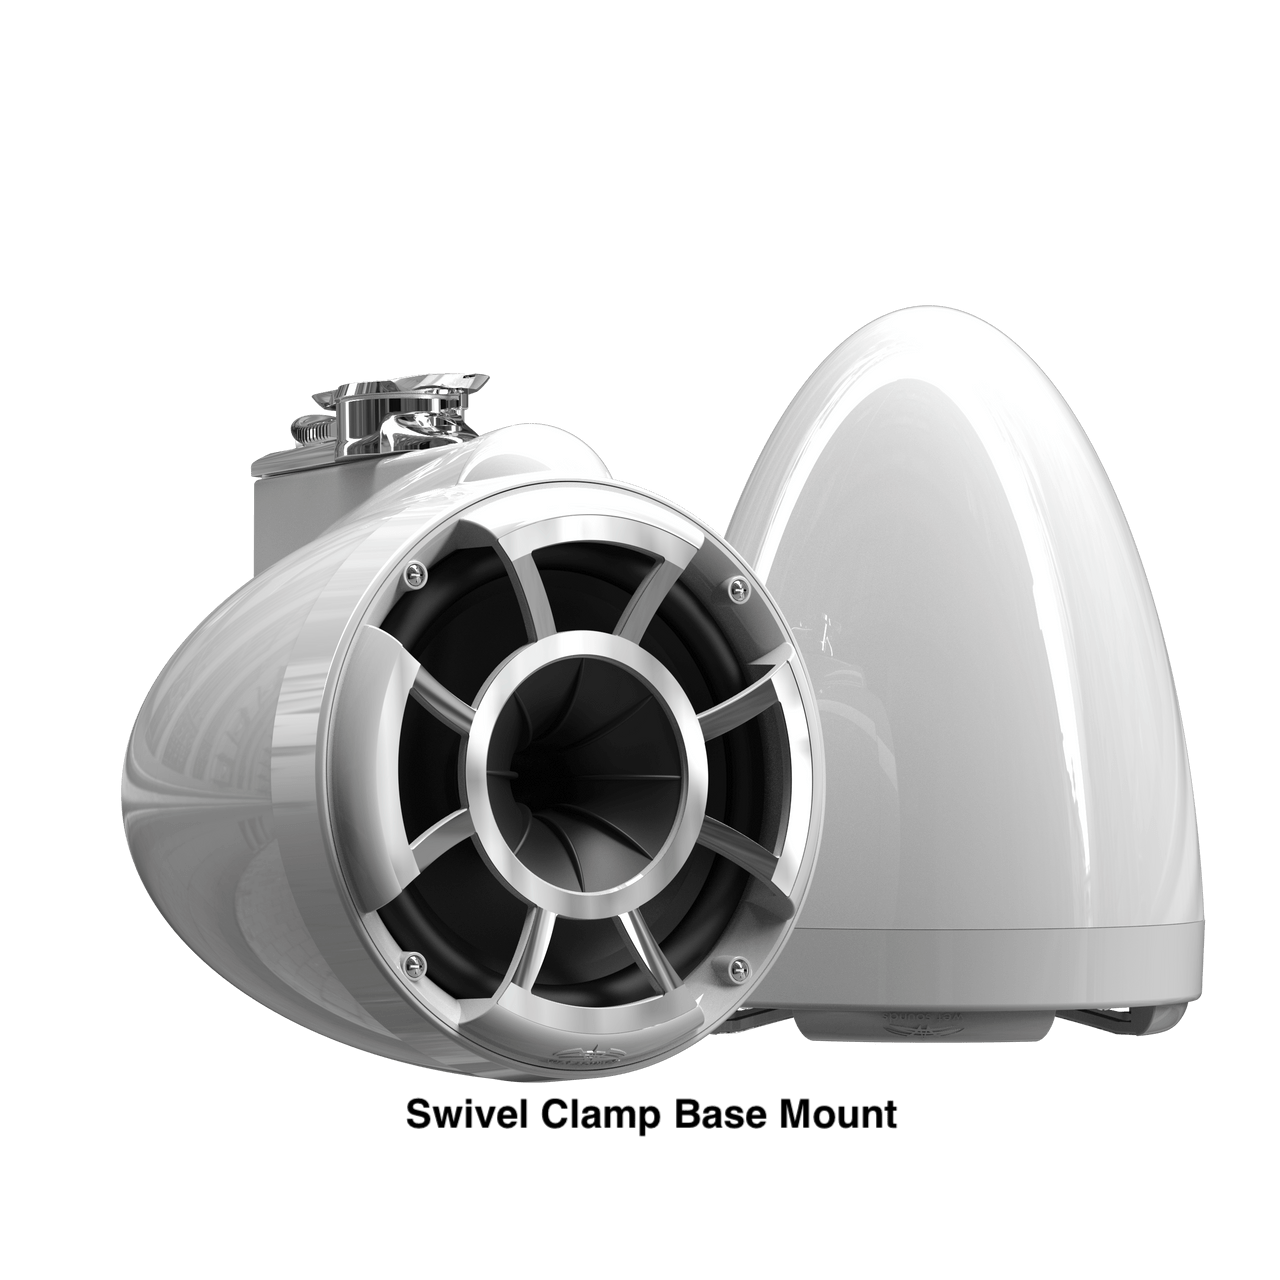 Wet Sounds Boat Wake Tower Speakers Swivel Clamp Base Mount Wet Sounds  REV10™ White V2 | Revolution Series 10" White Tower Speakers